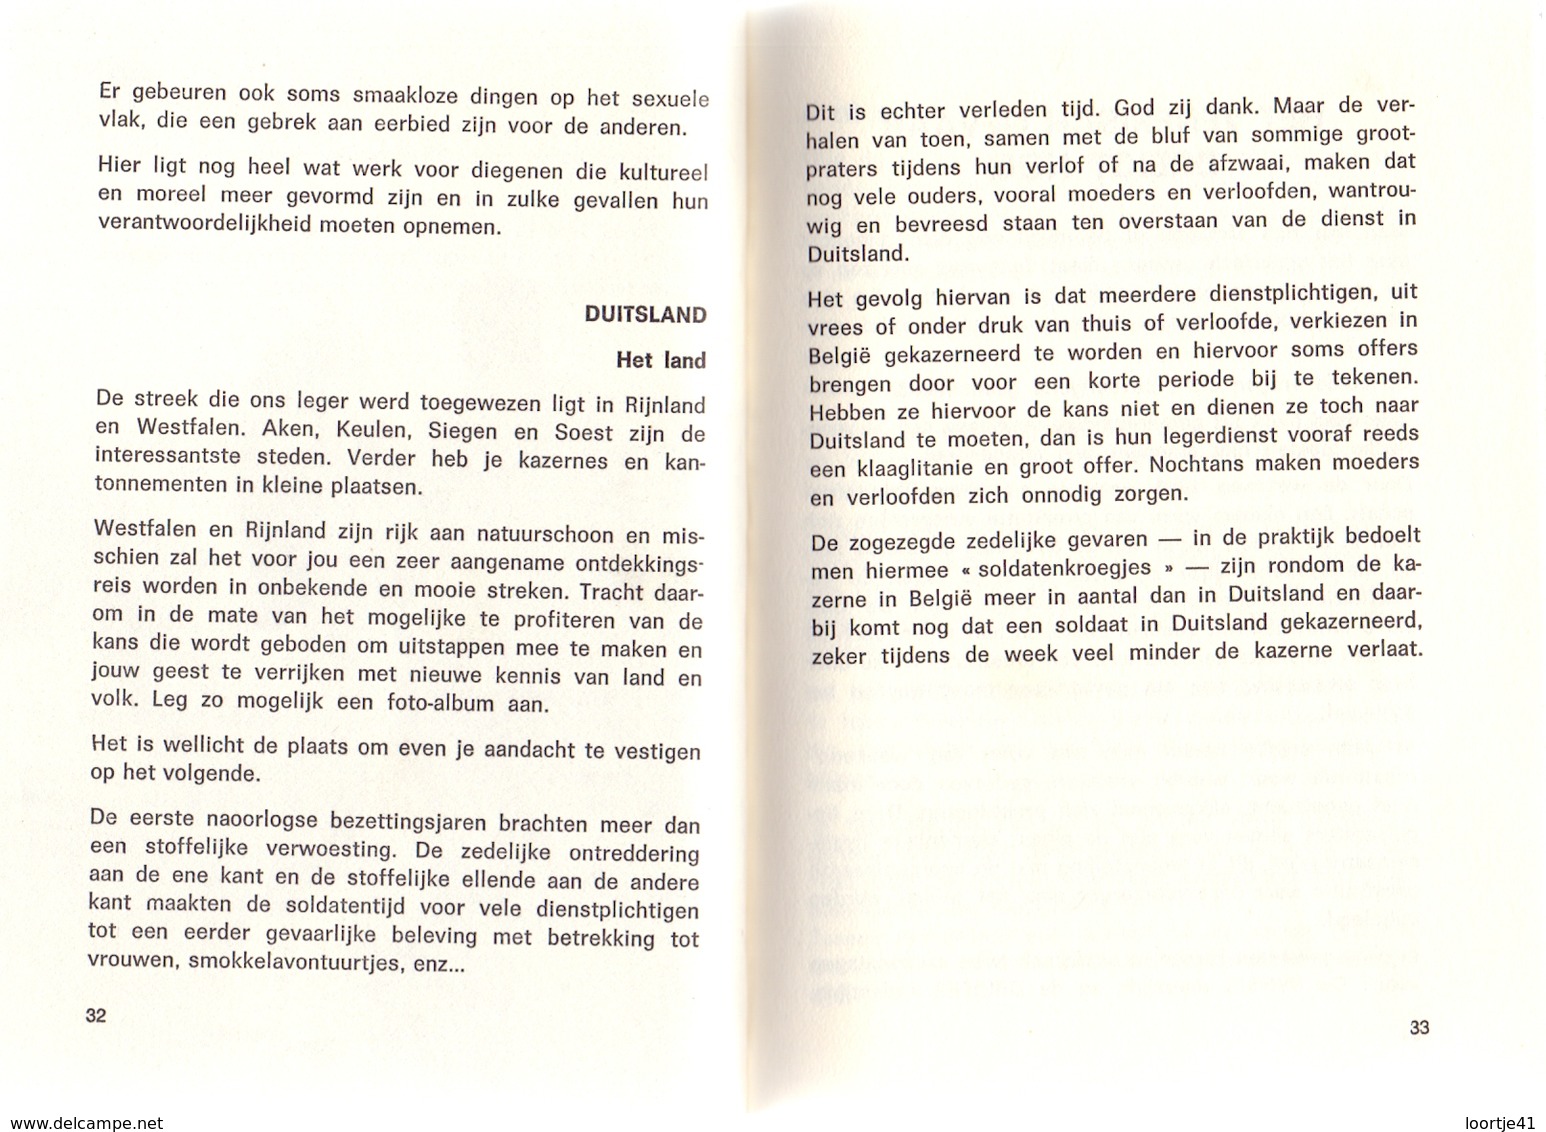 Boekje Handboek Van De Soldaat - Uitgave Milac - 1969 - Practical